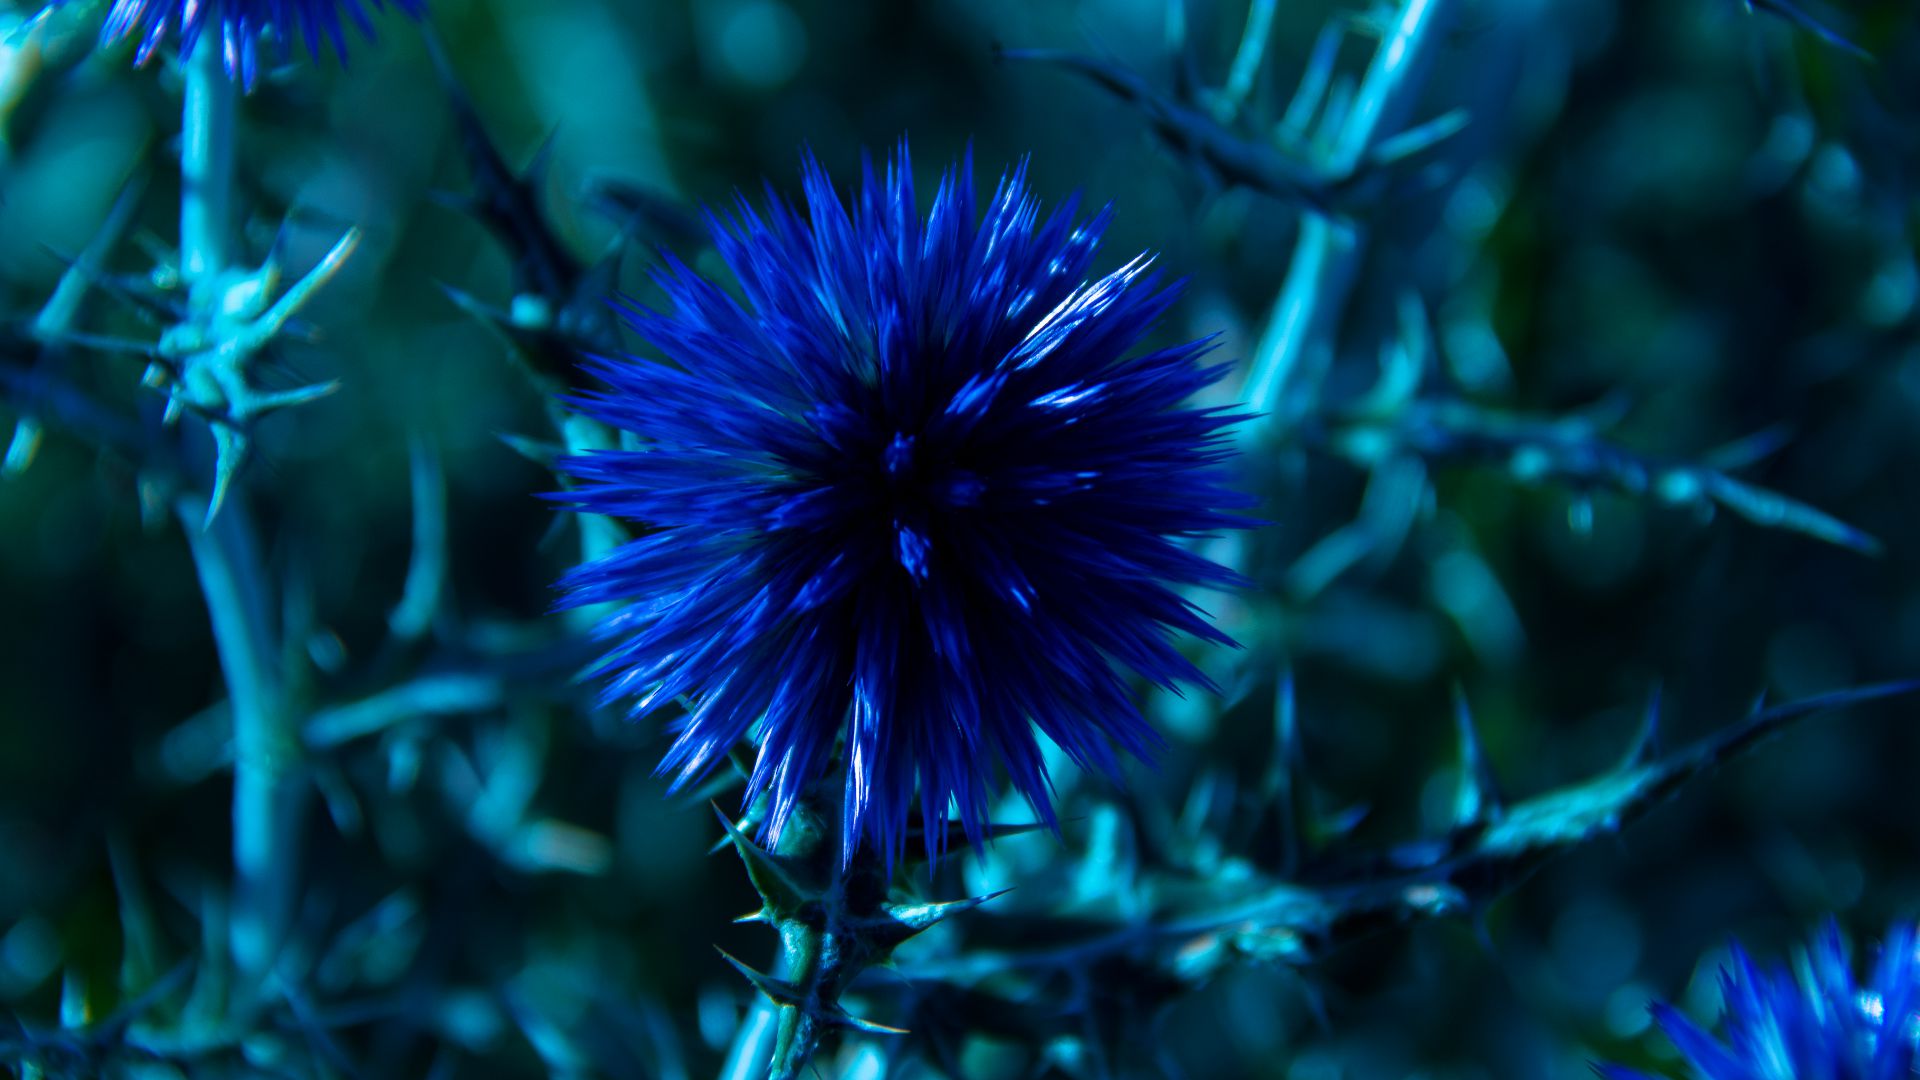 Шардон, 5k, 4k, цветы, синий, Chardon, 5k, 4k wallpaper, 8k, flowers, blue (horizontal)